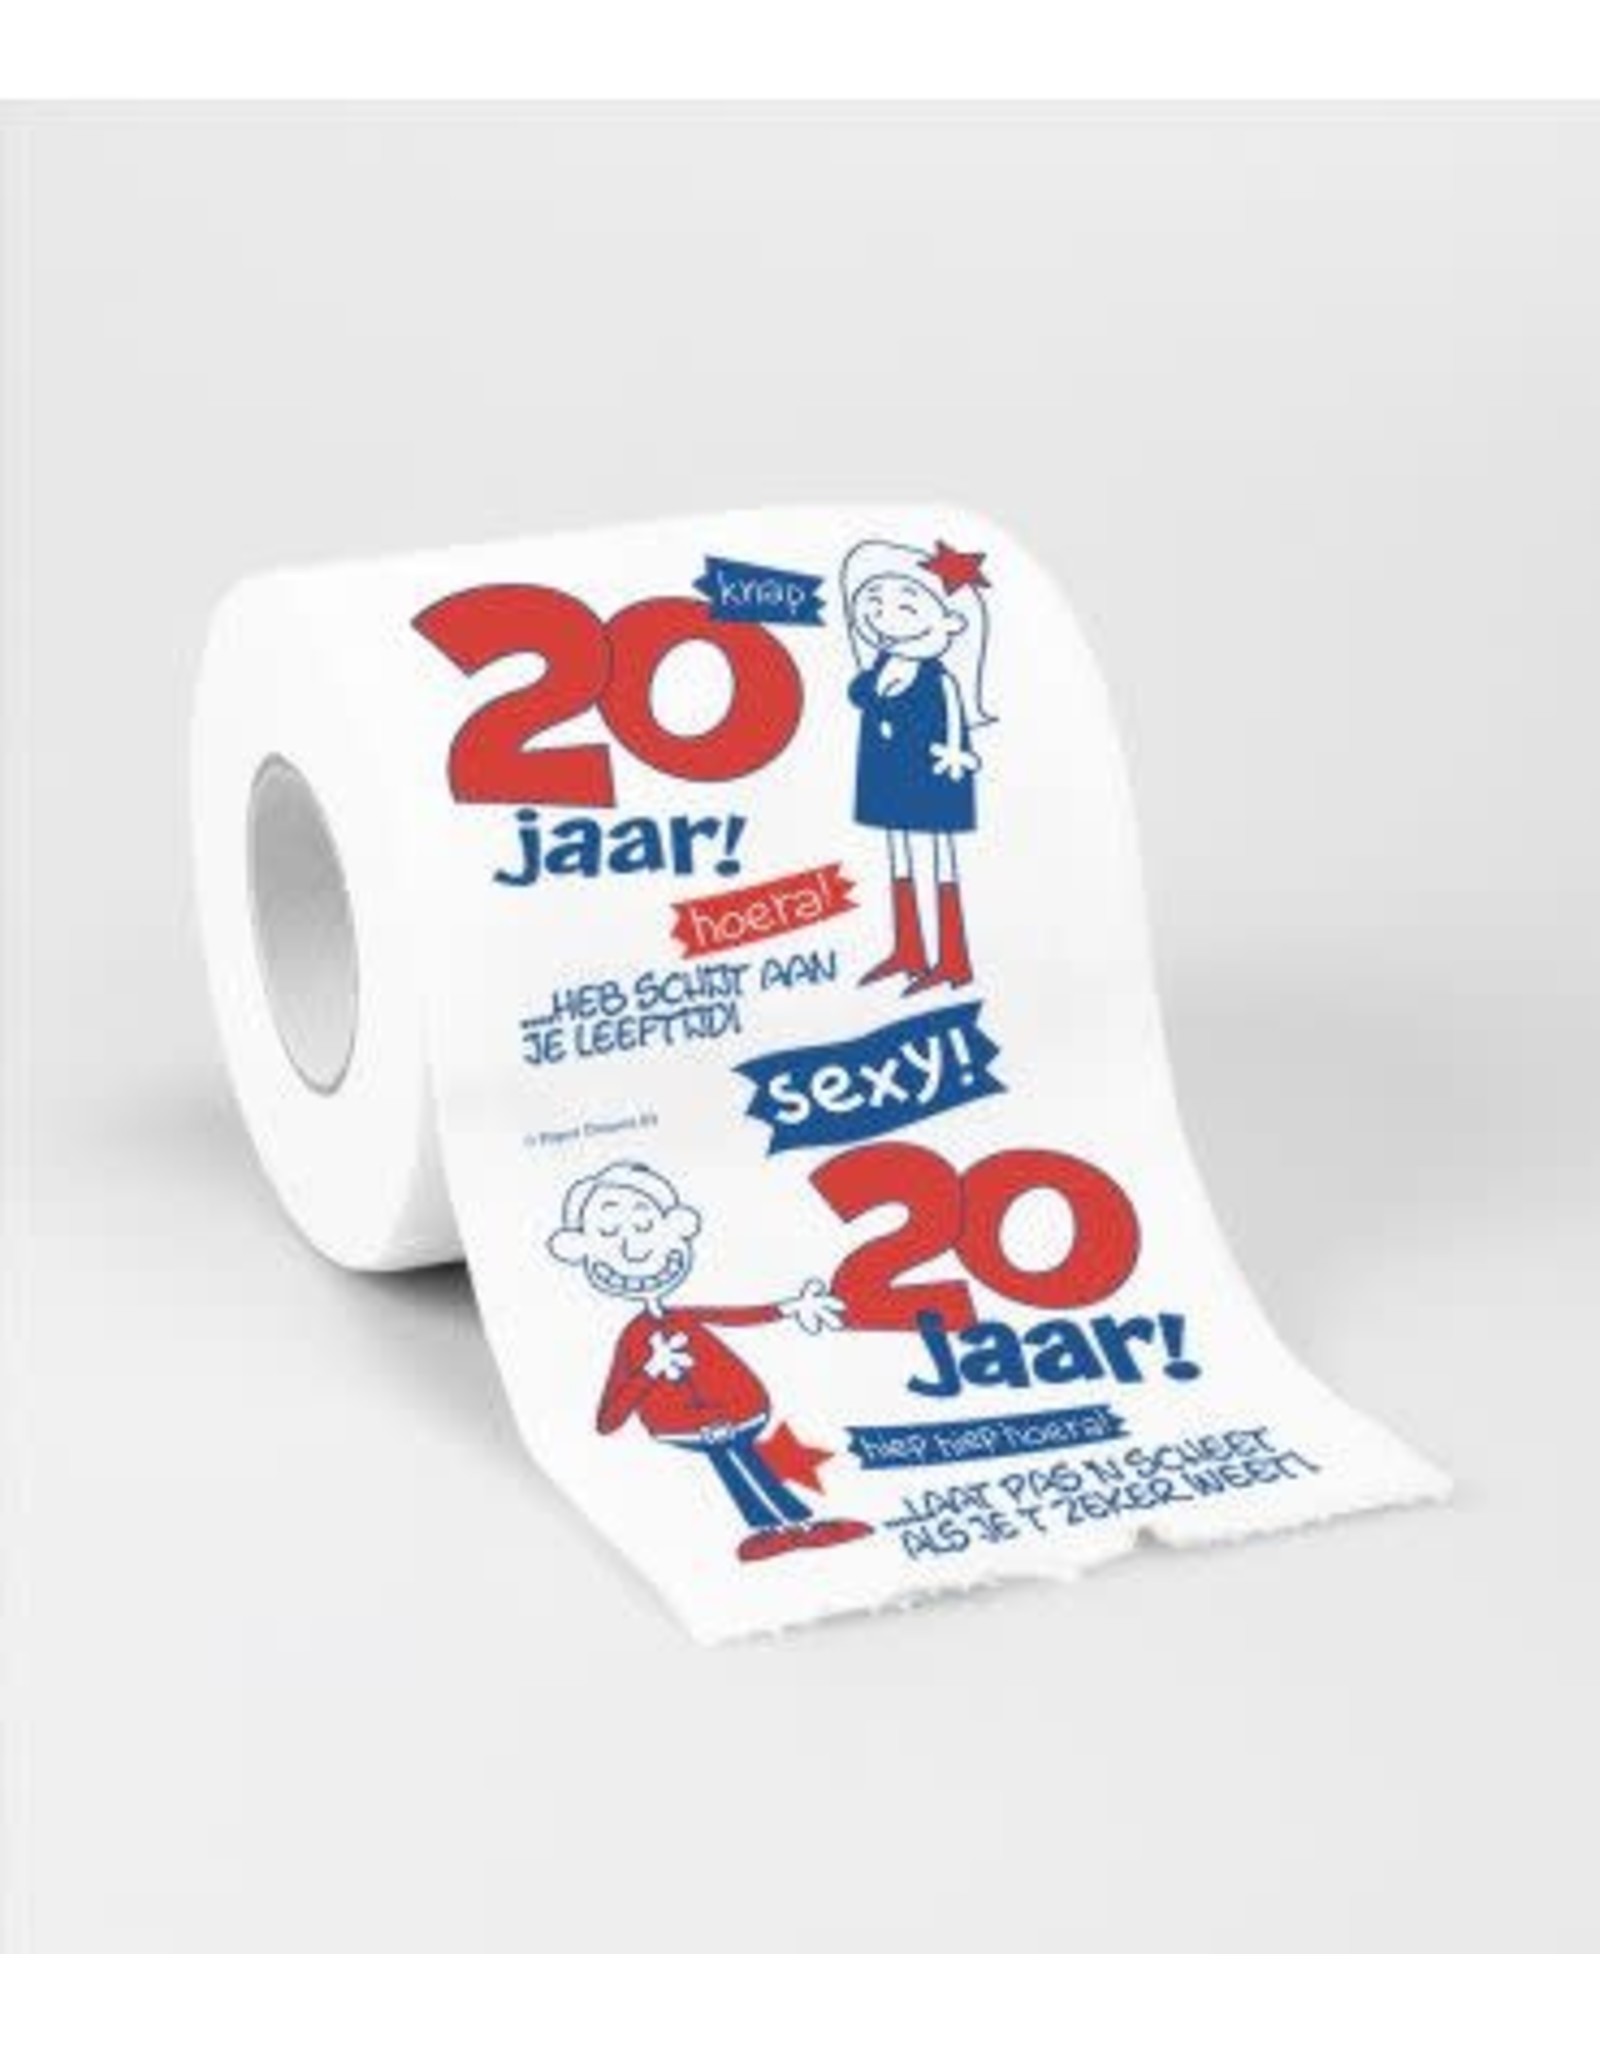 Toiletpapier nr 3 20 jaar